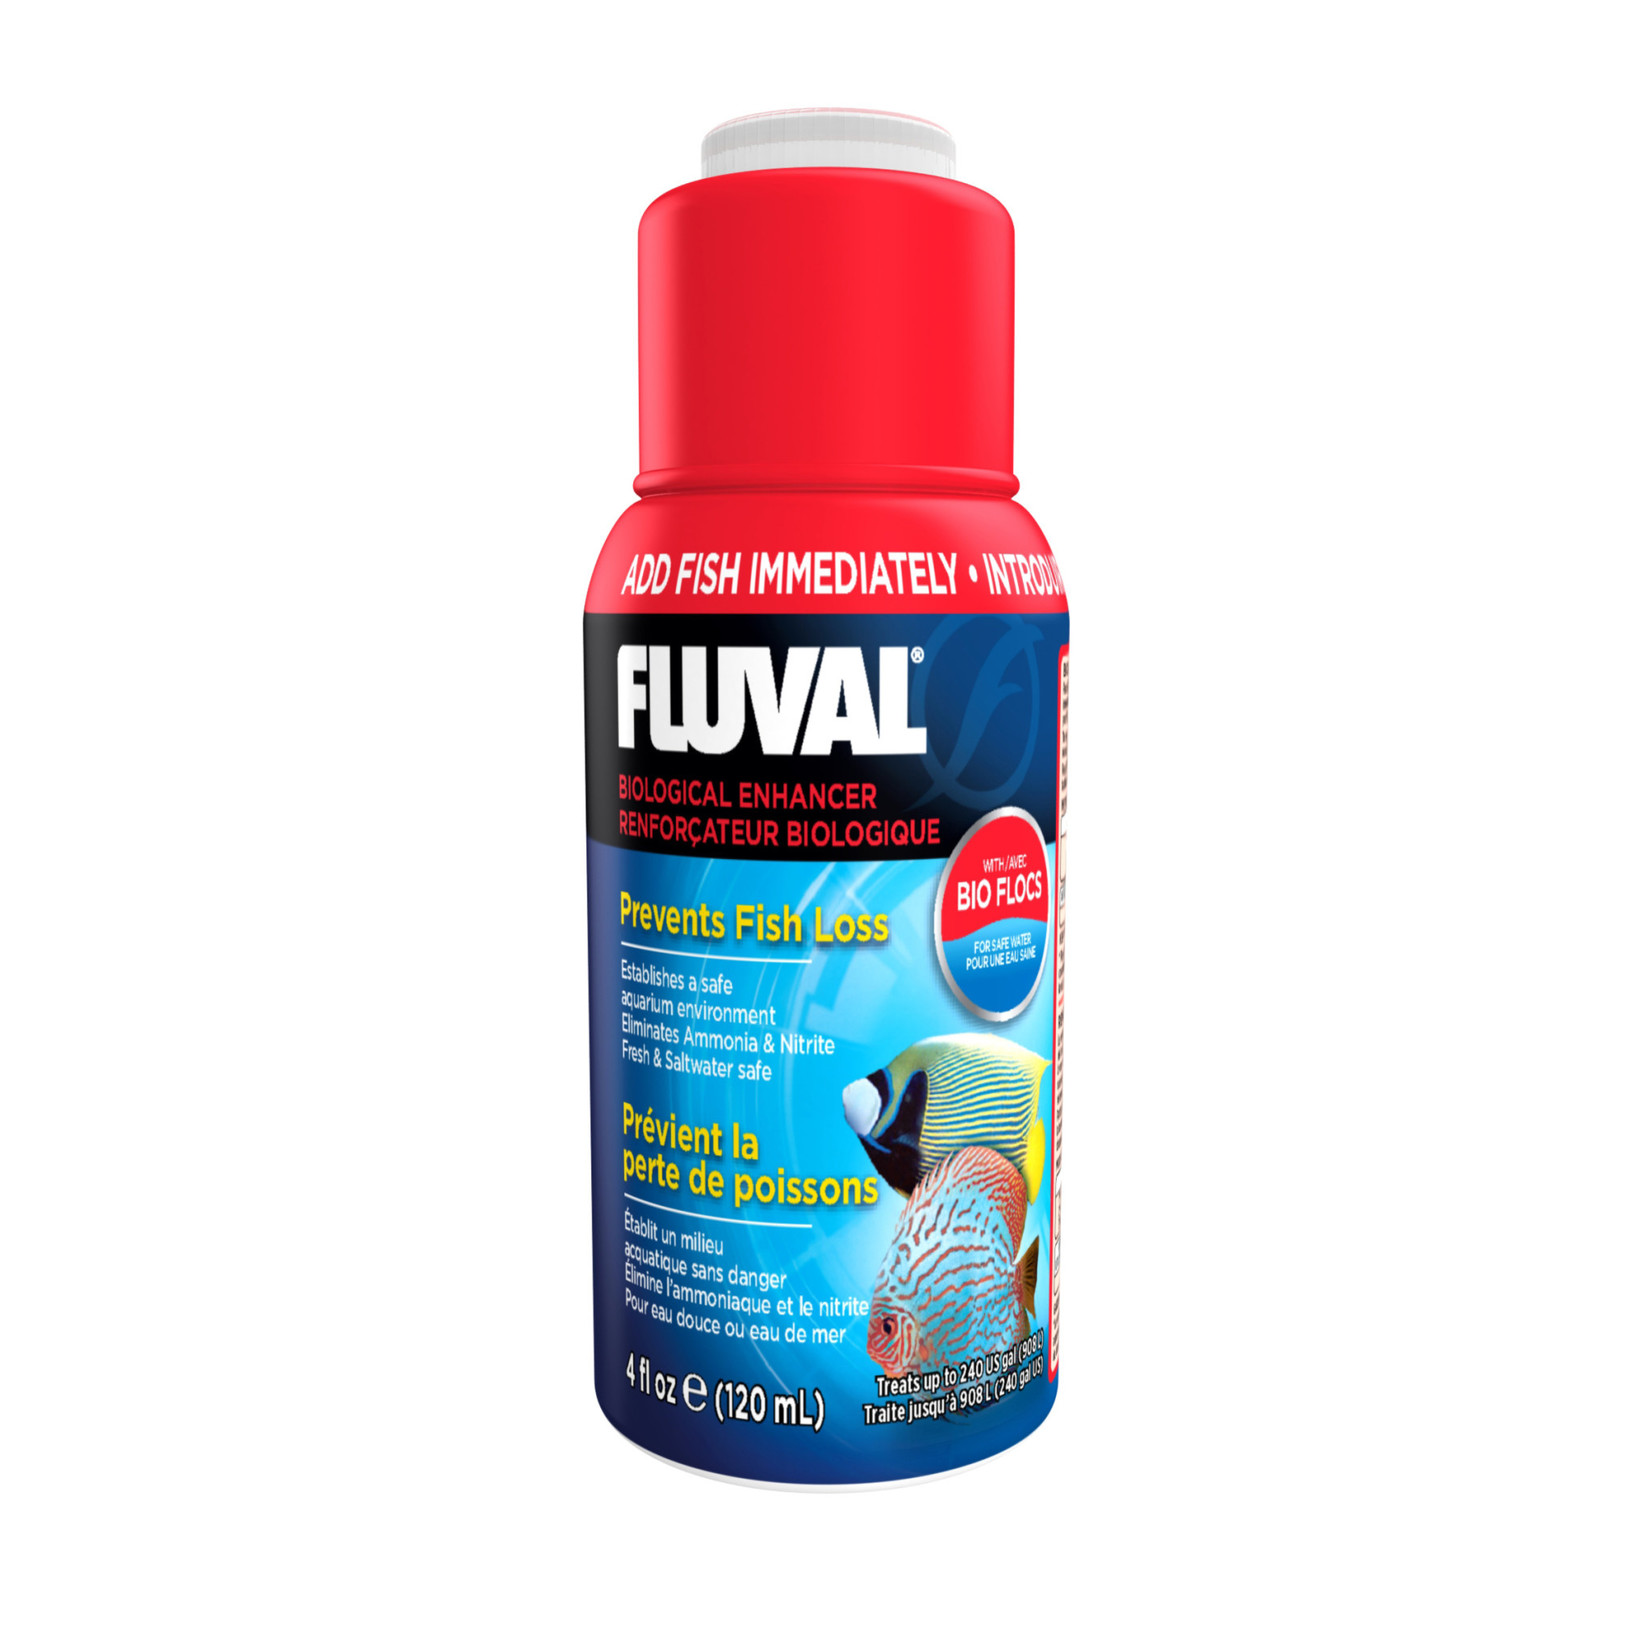 FLUVAL Fluval Biological Enhancer, 4 oz (120 mL)